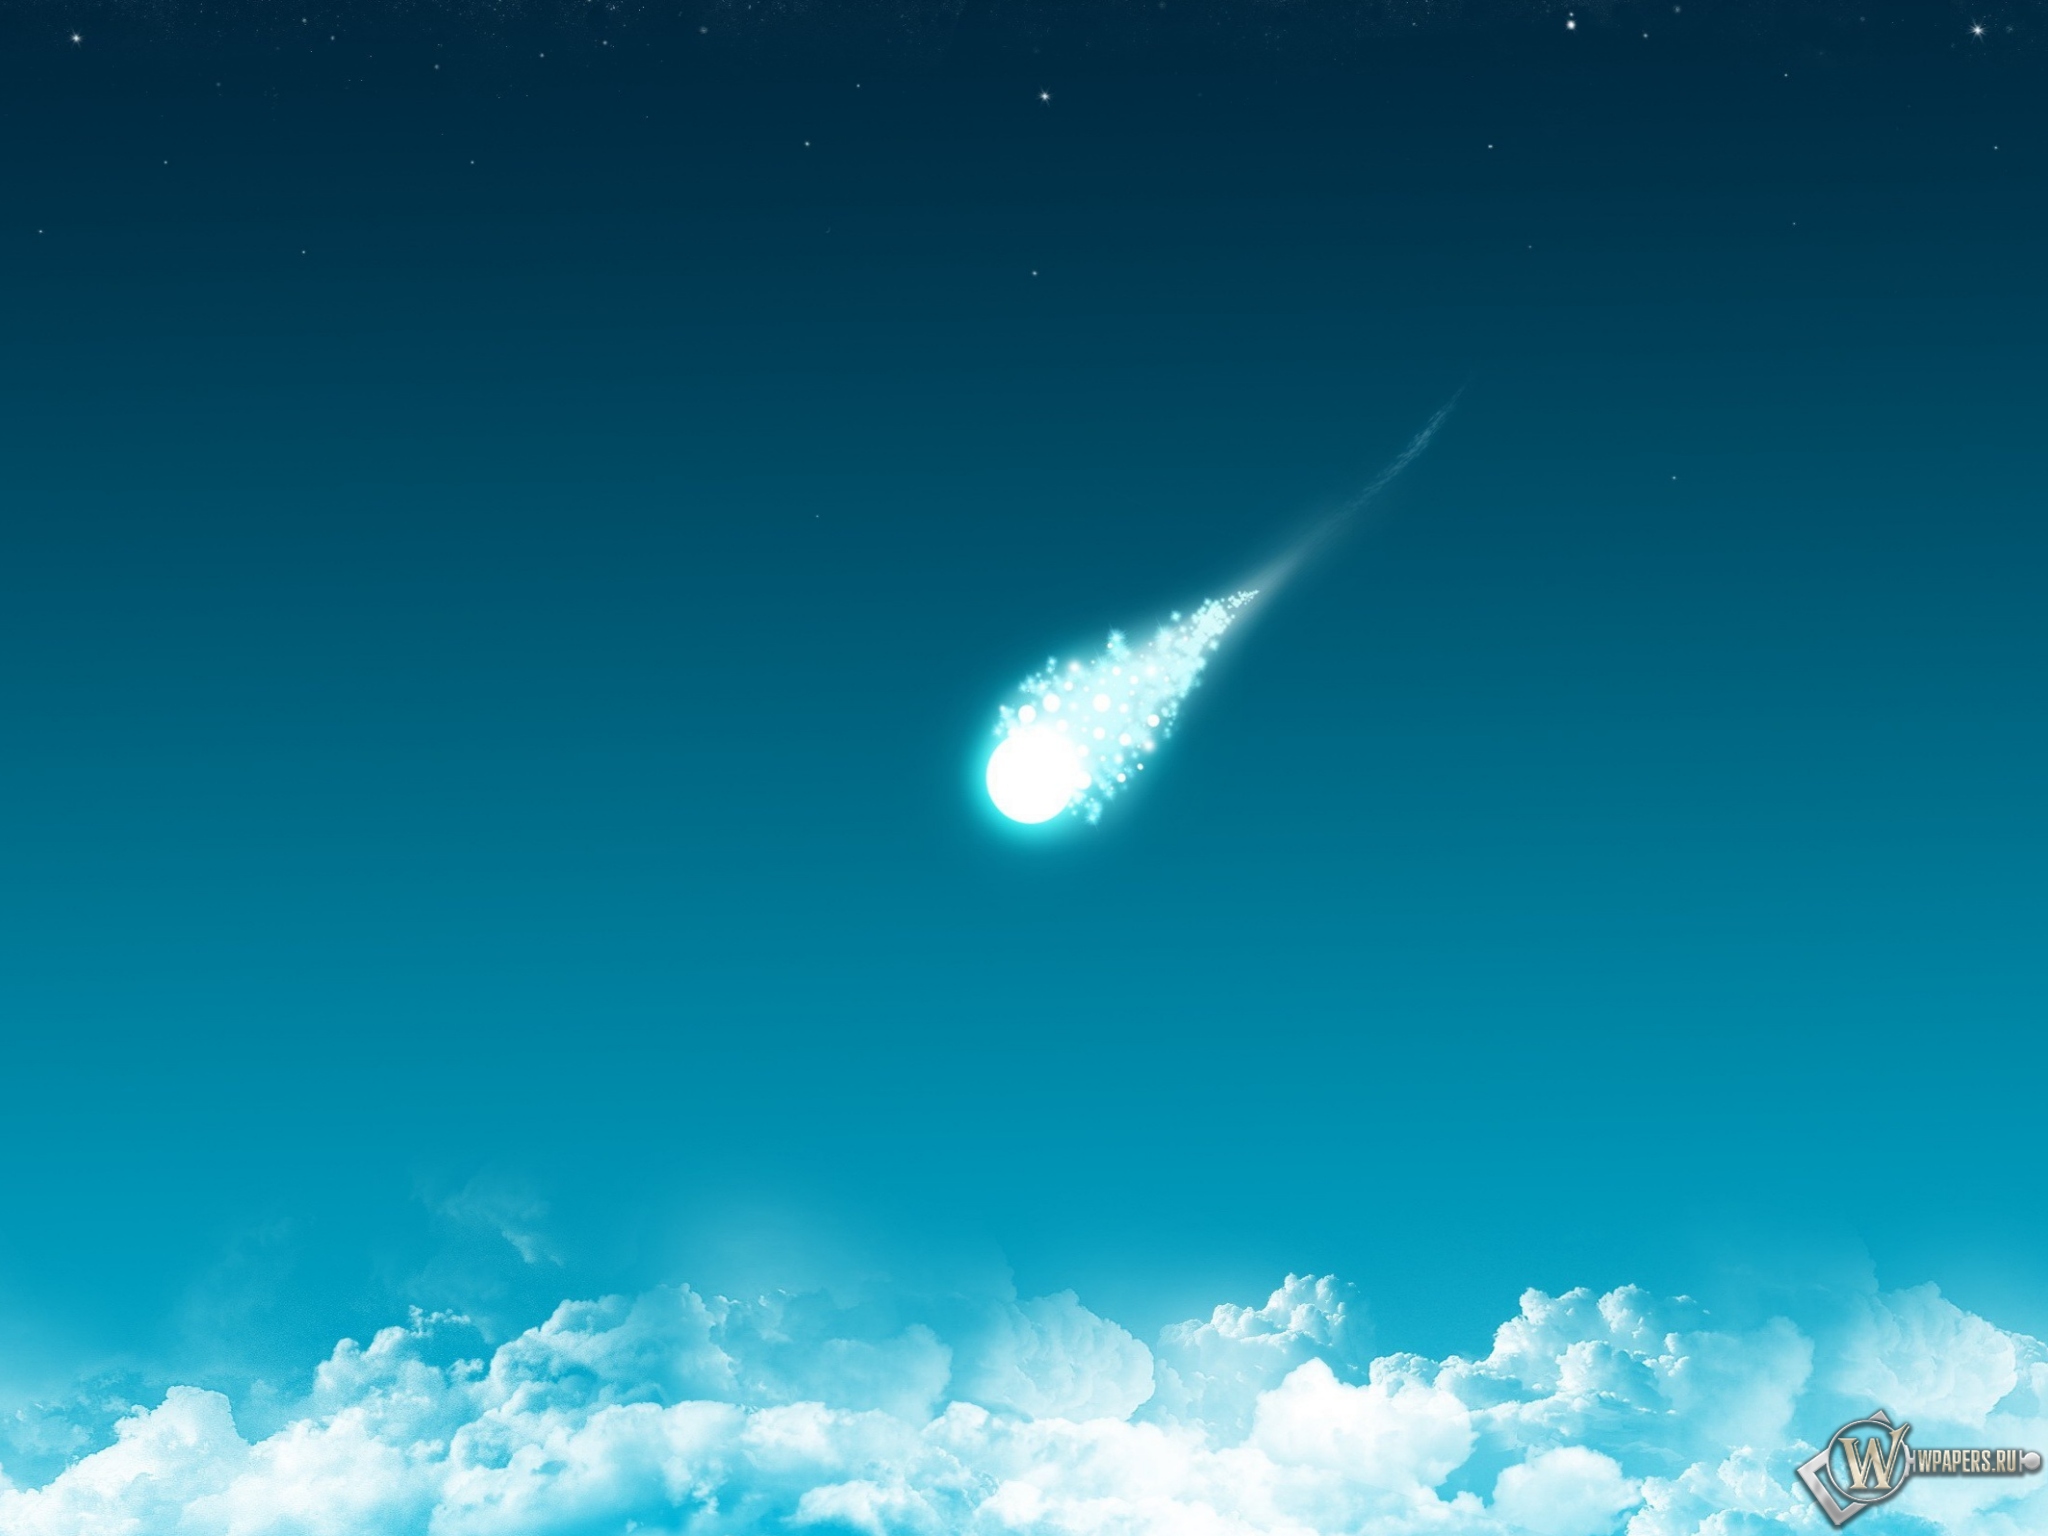 Комета 2048x1536